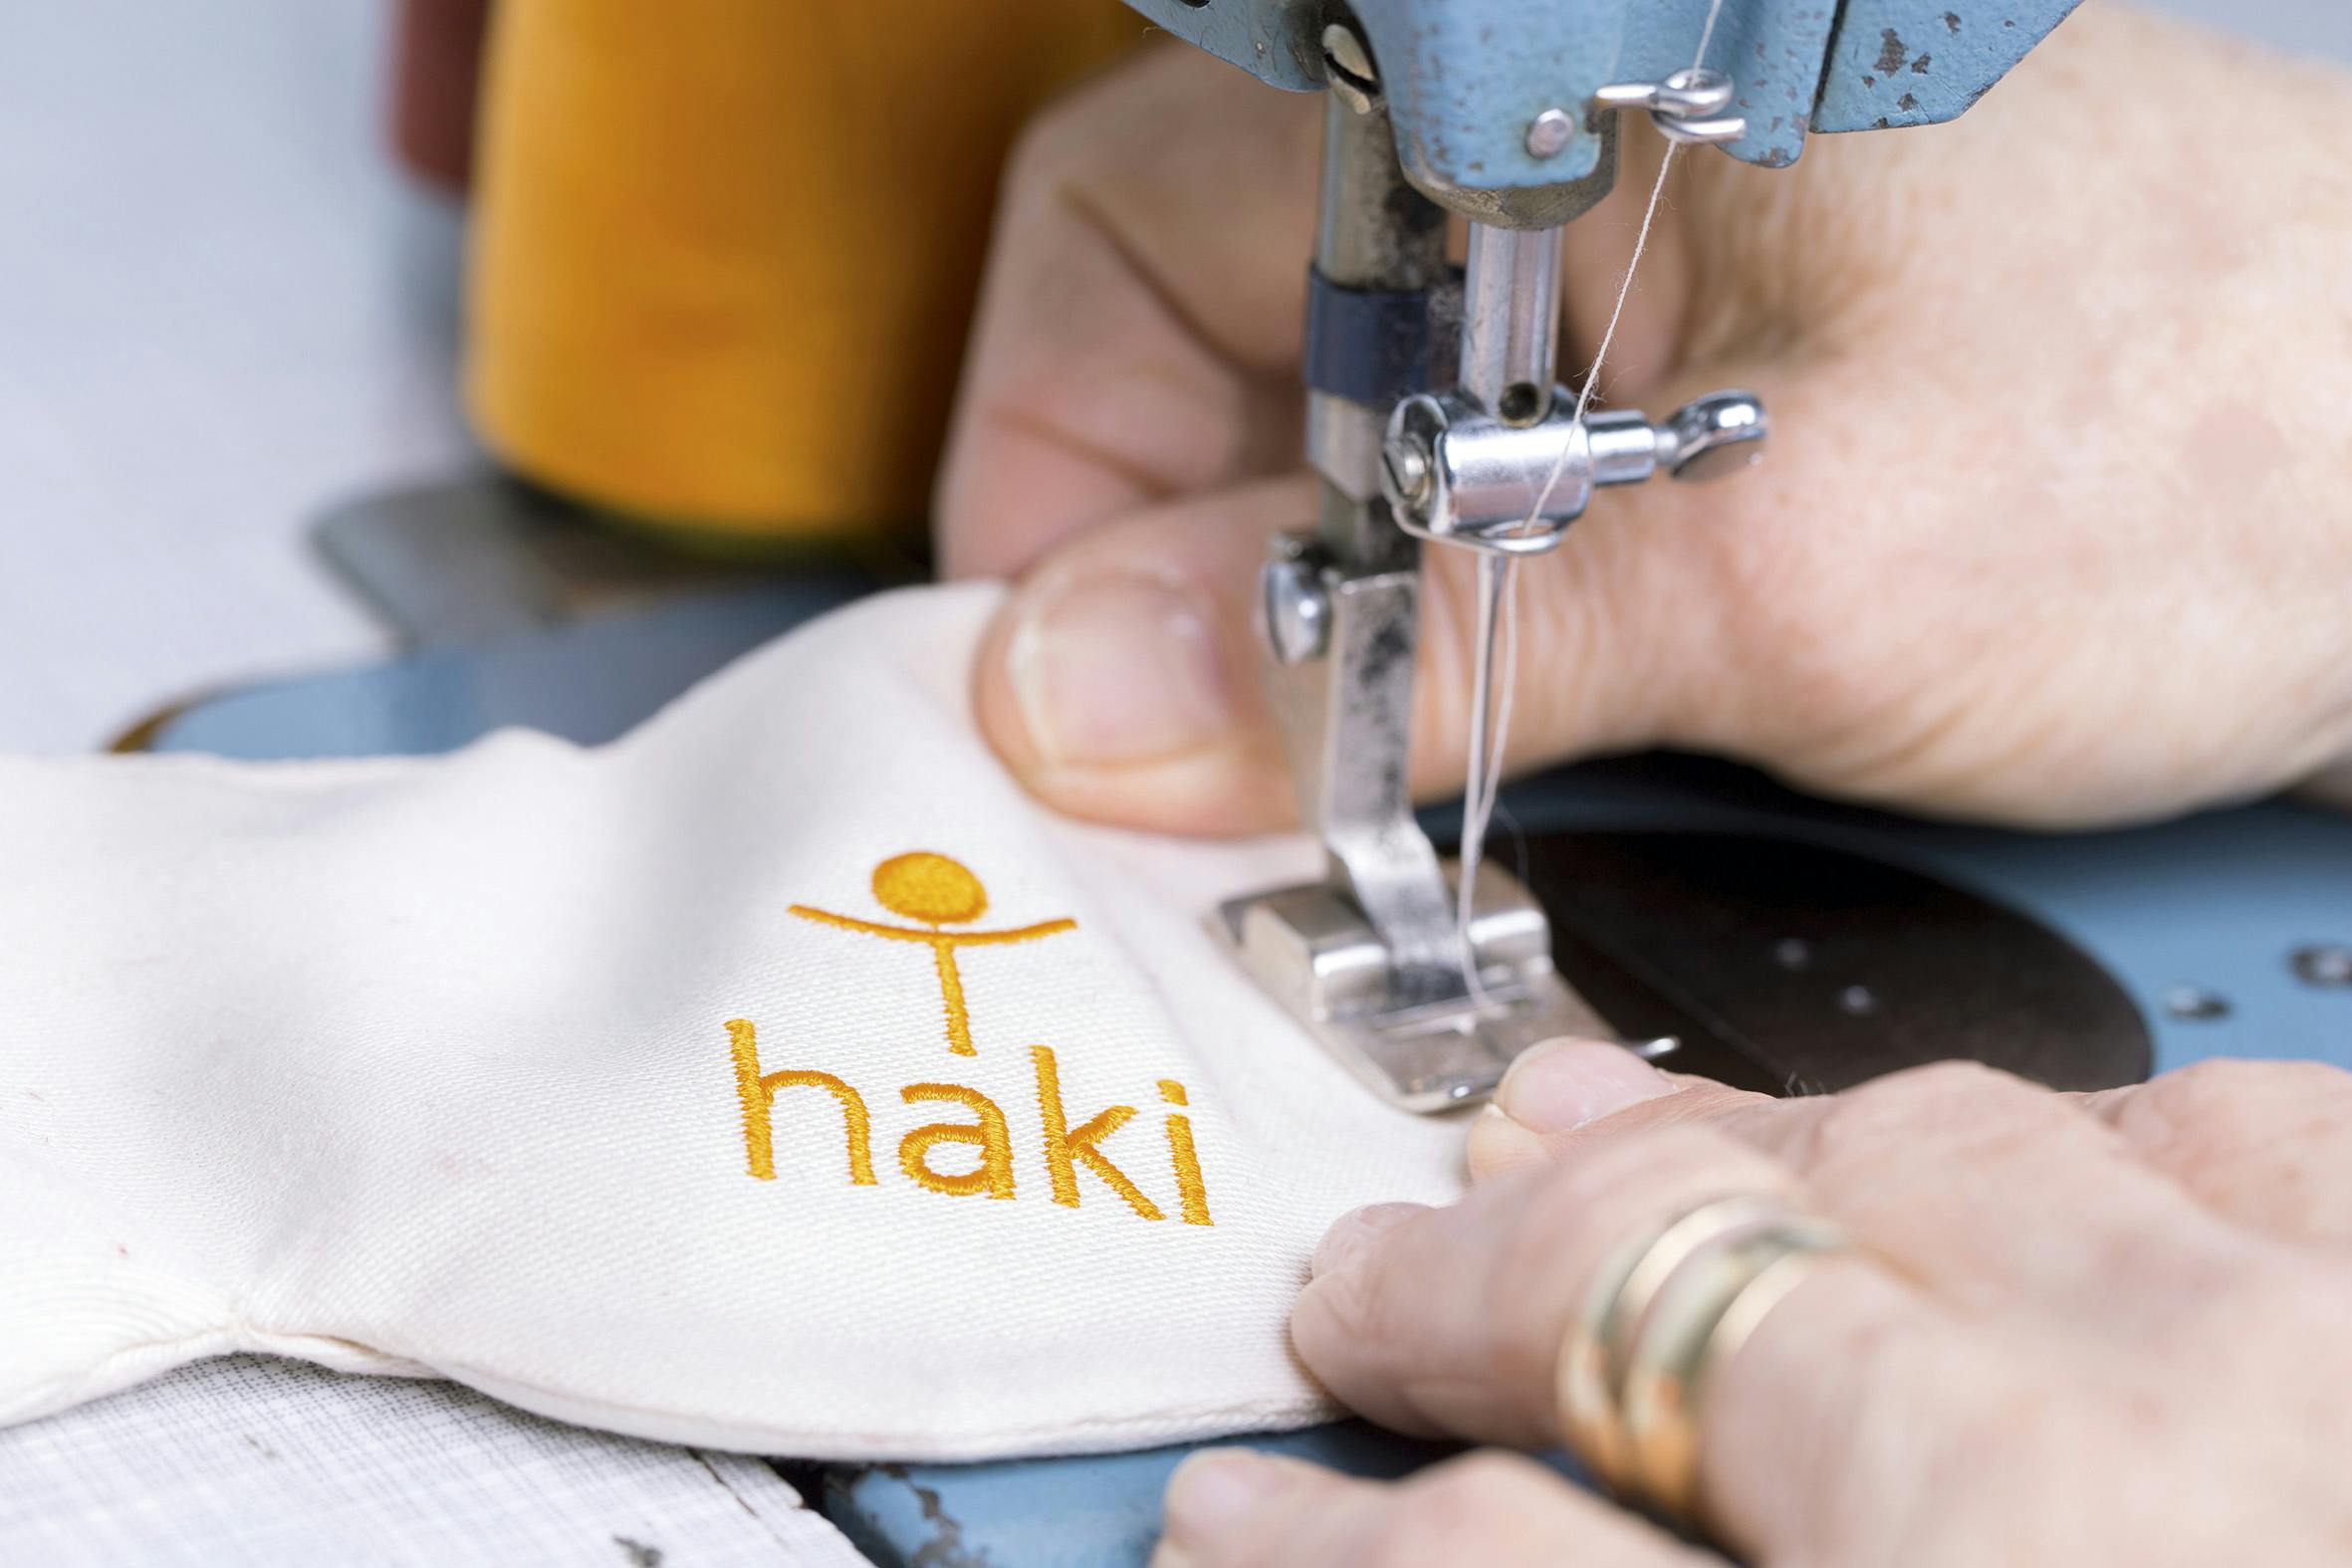 Detailaufnahme während des Nähens eines Augenkissens mit der Aufschrift "Haki".